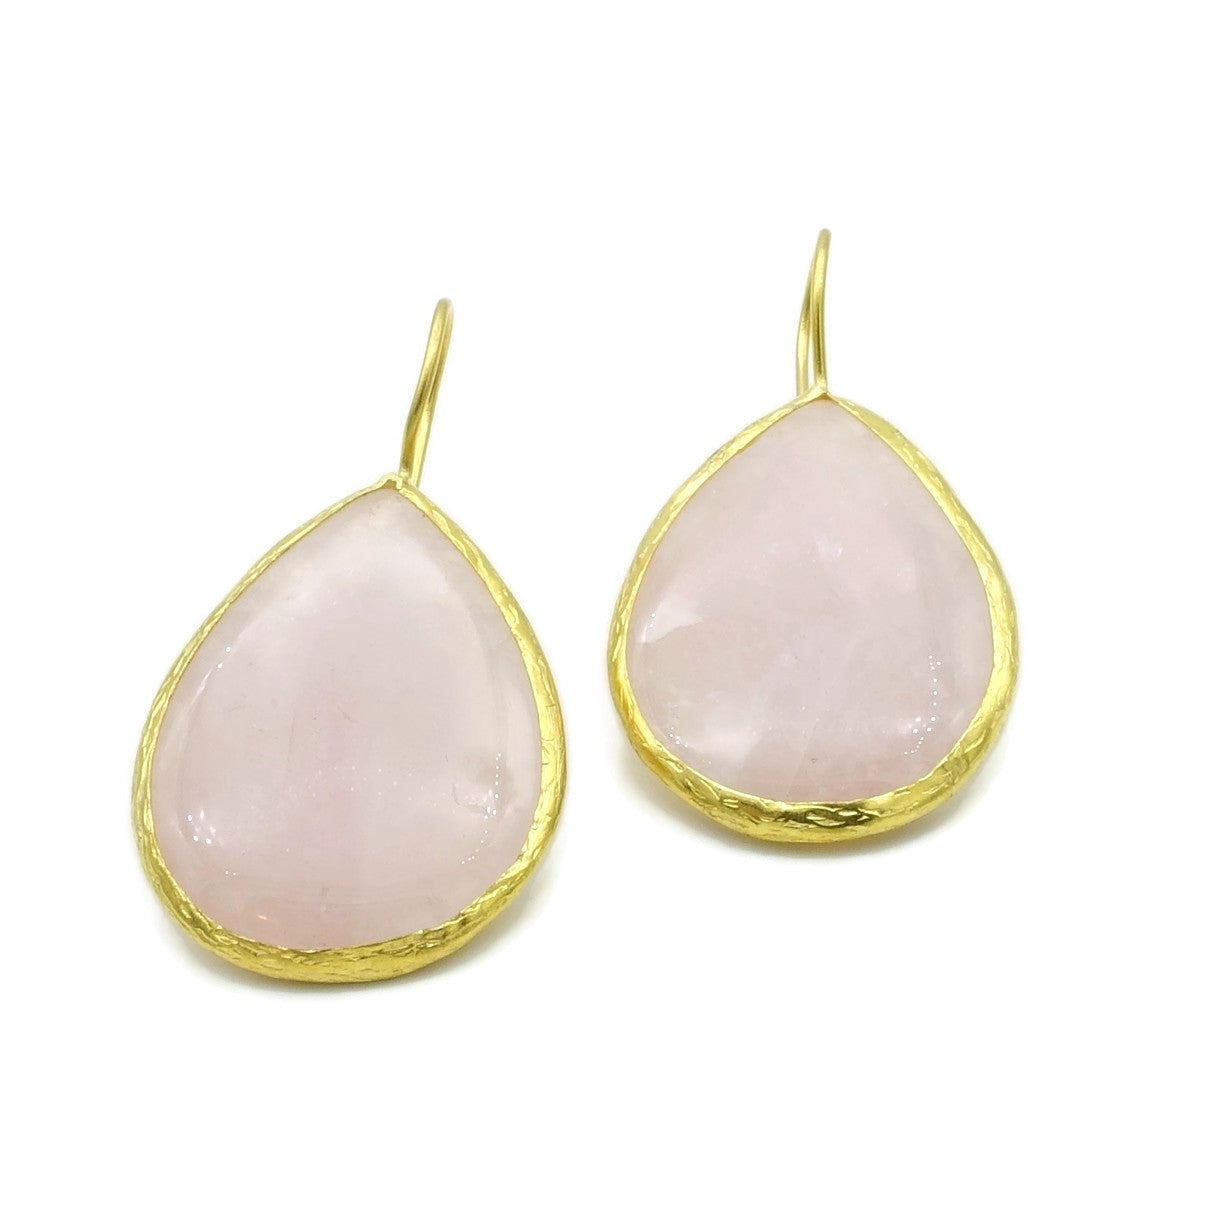 Aylas Rose quartz semi precious gemstone earrings - 21ct Gold plated- Handmade